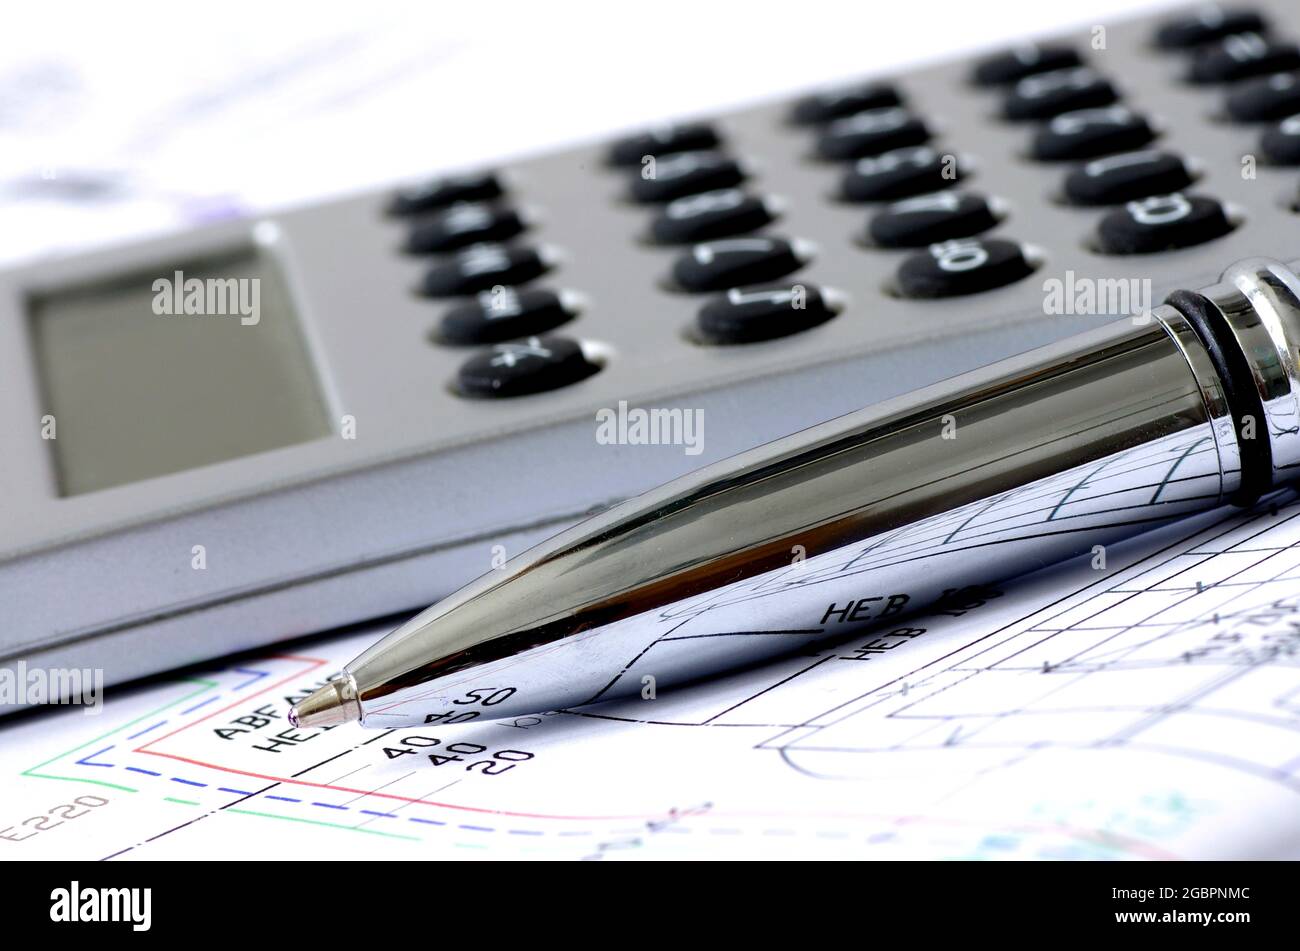 Plan, calculator and silver pen Stock Photo